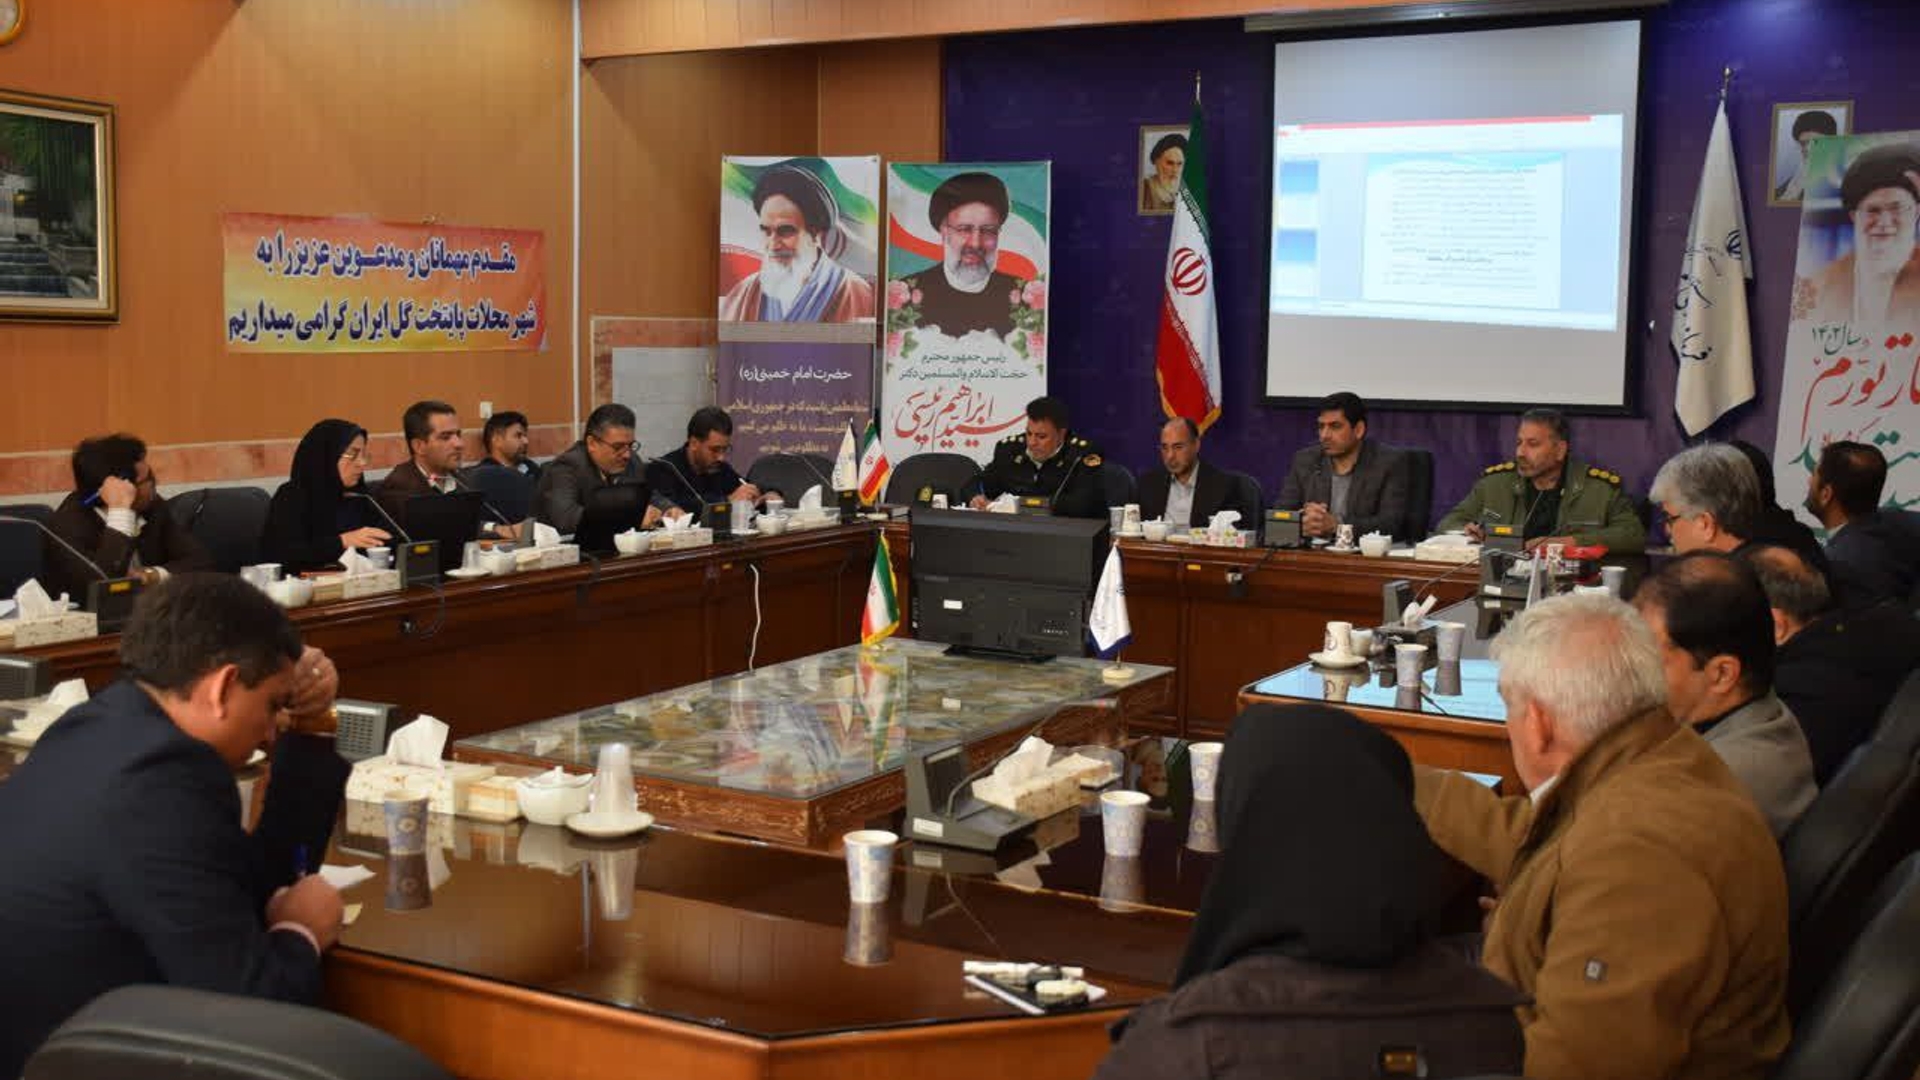 هشتمین جلسه شورای اداری شهرستان محلات برگزار شد.